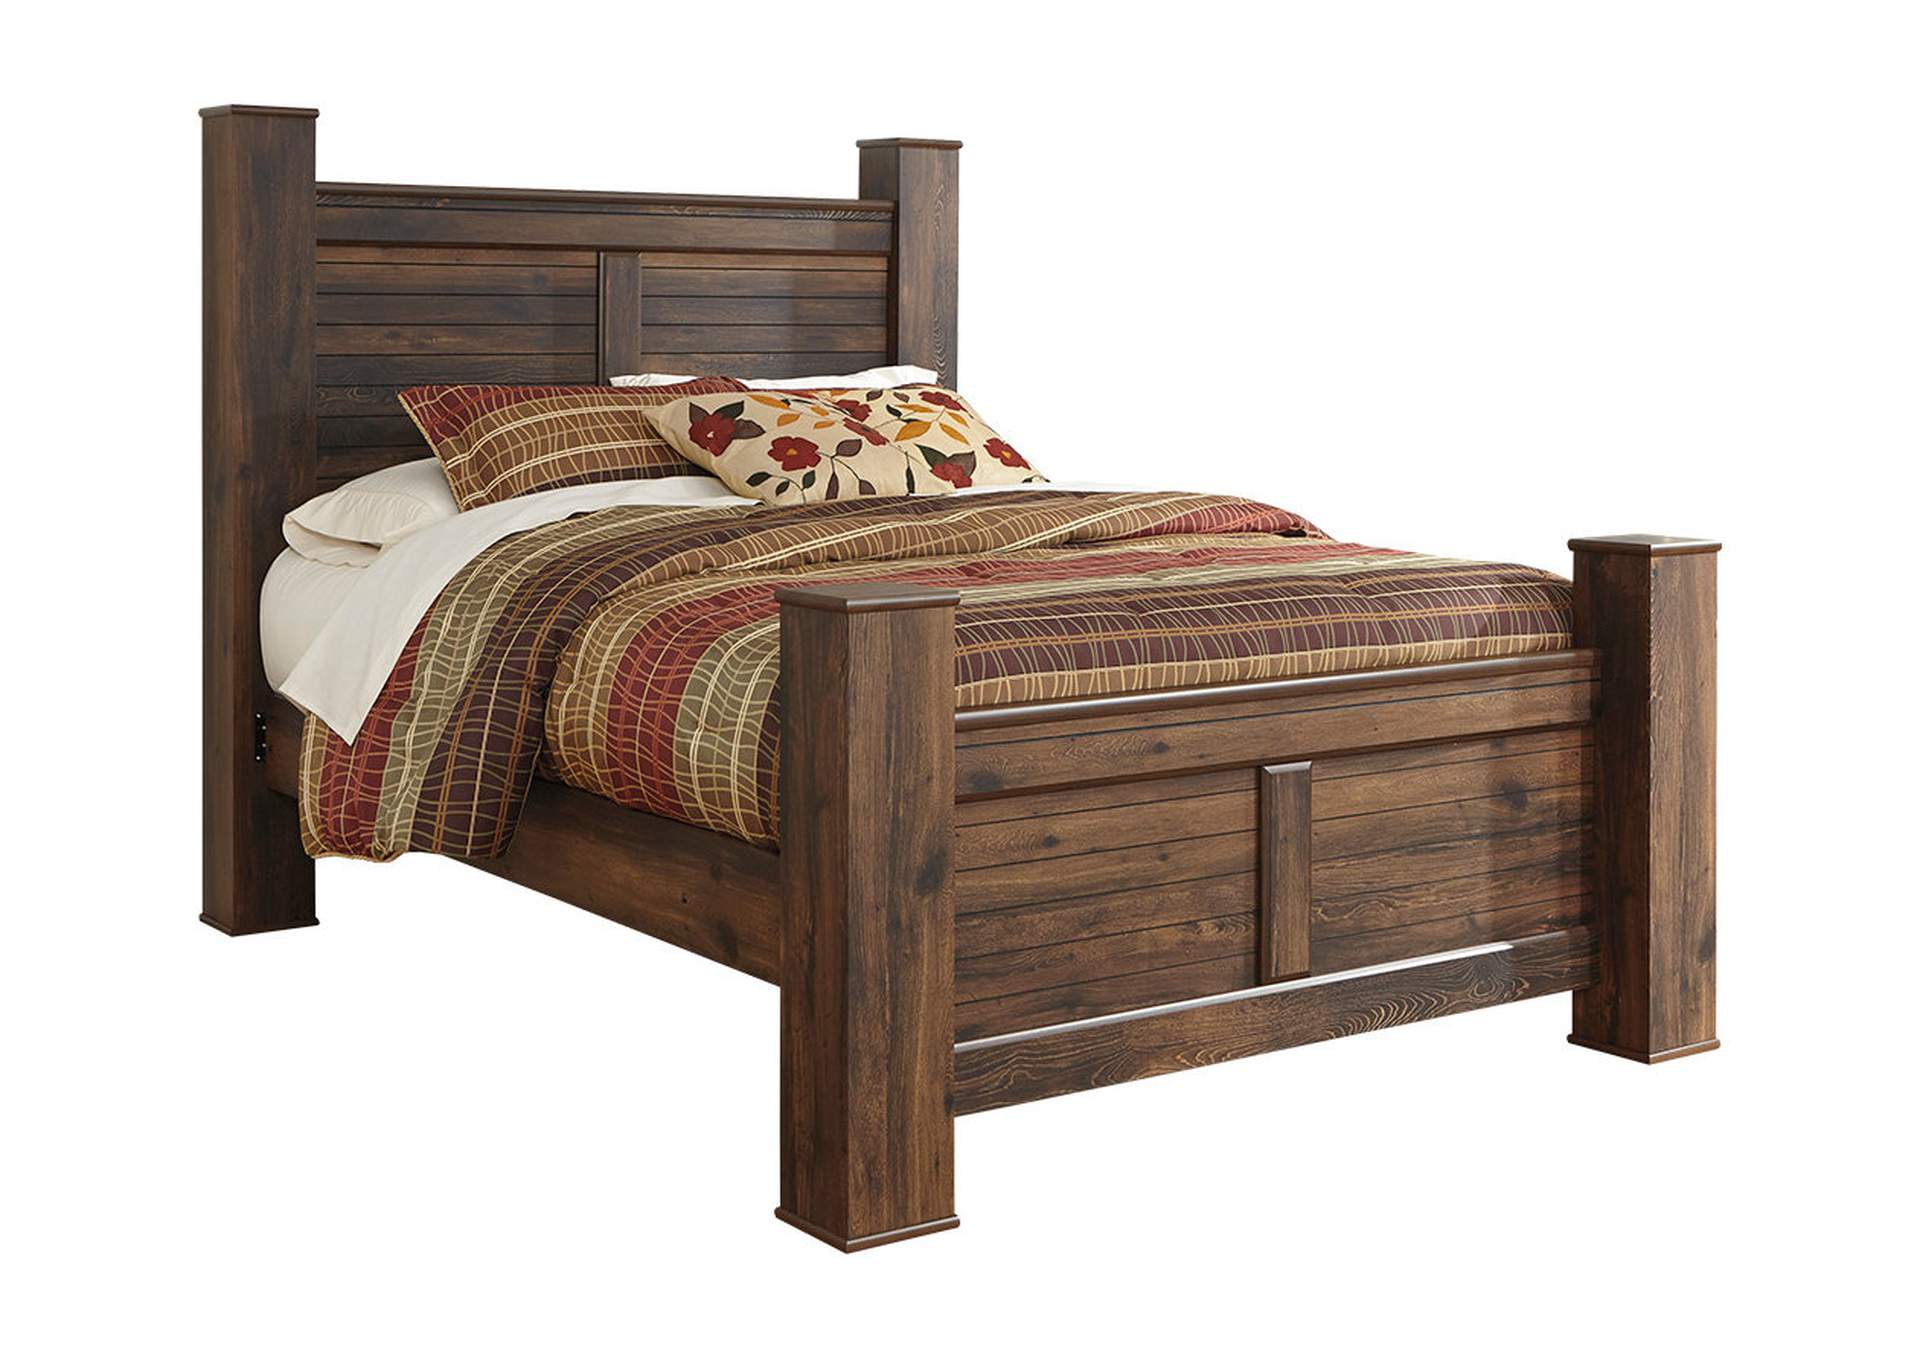 Референс деревянной кровати